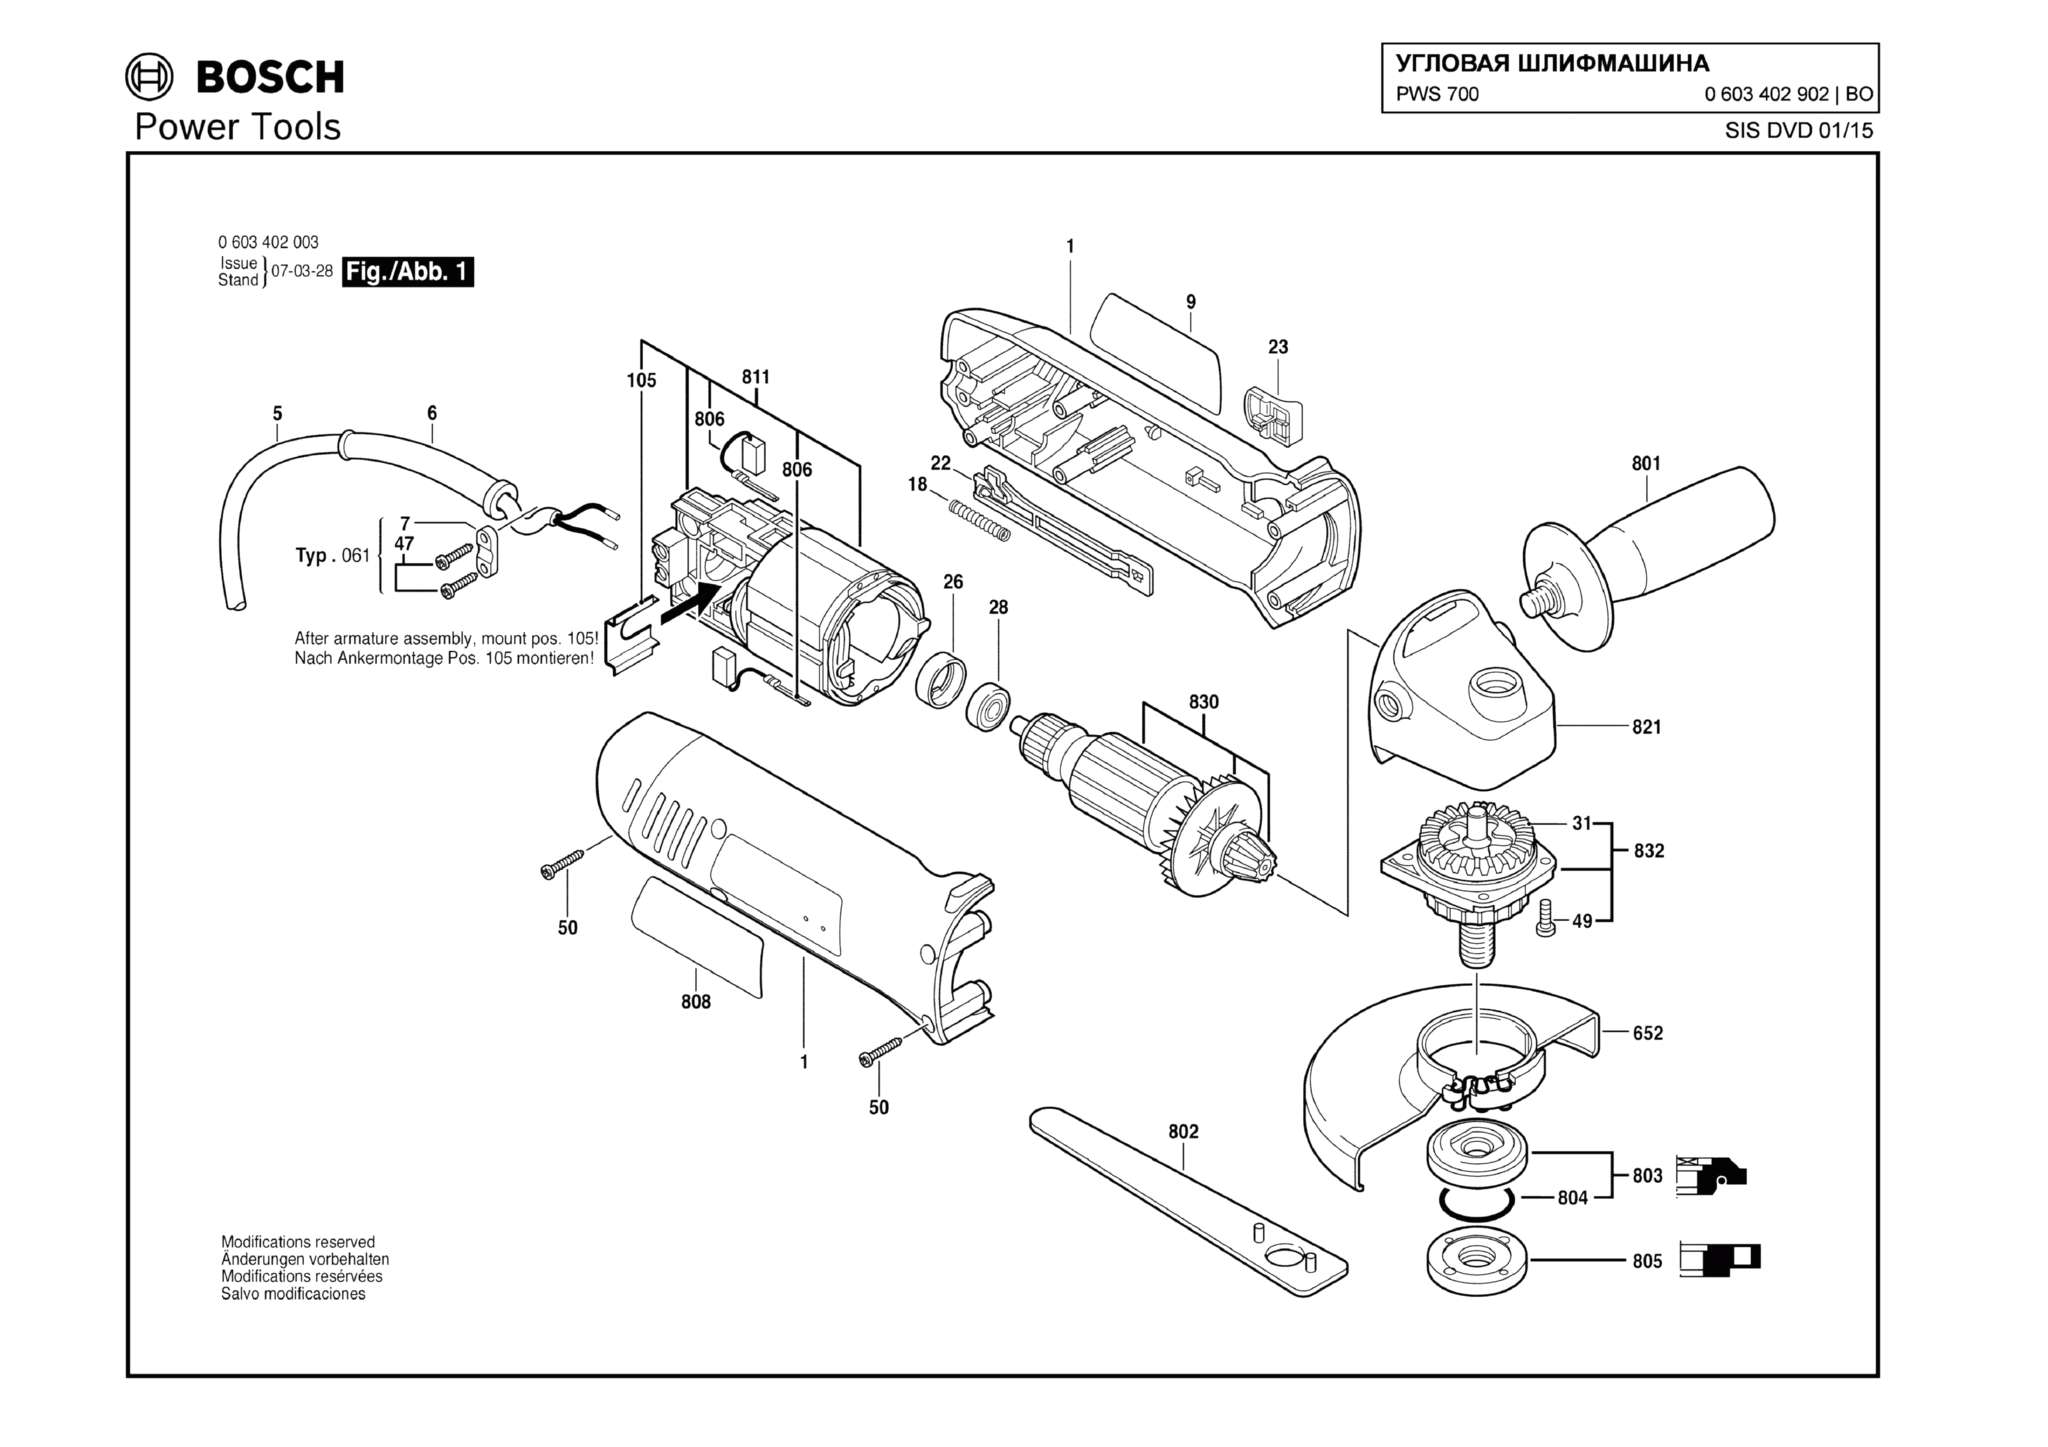 Запчасти, схема и деталировка Bosch PWS 700 (ТИП 0603402902)